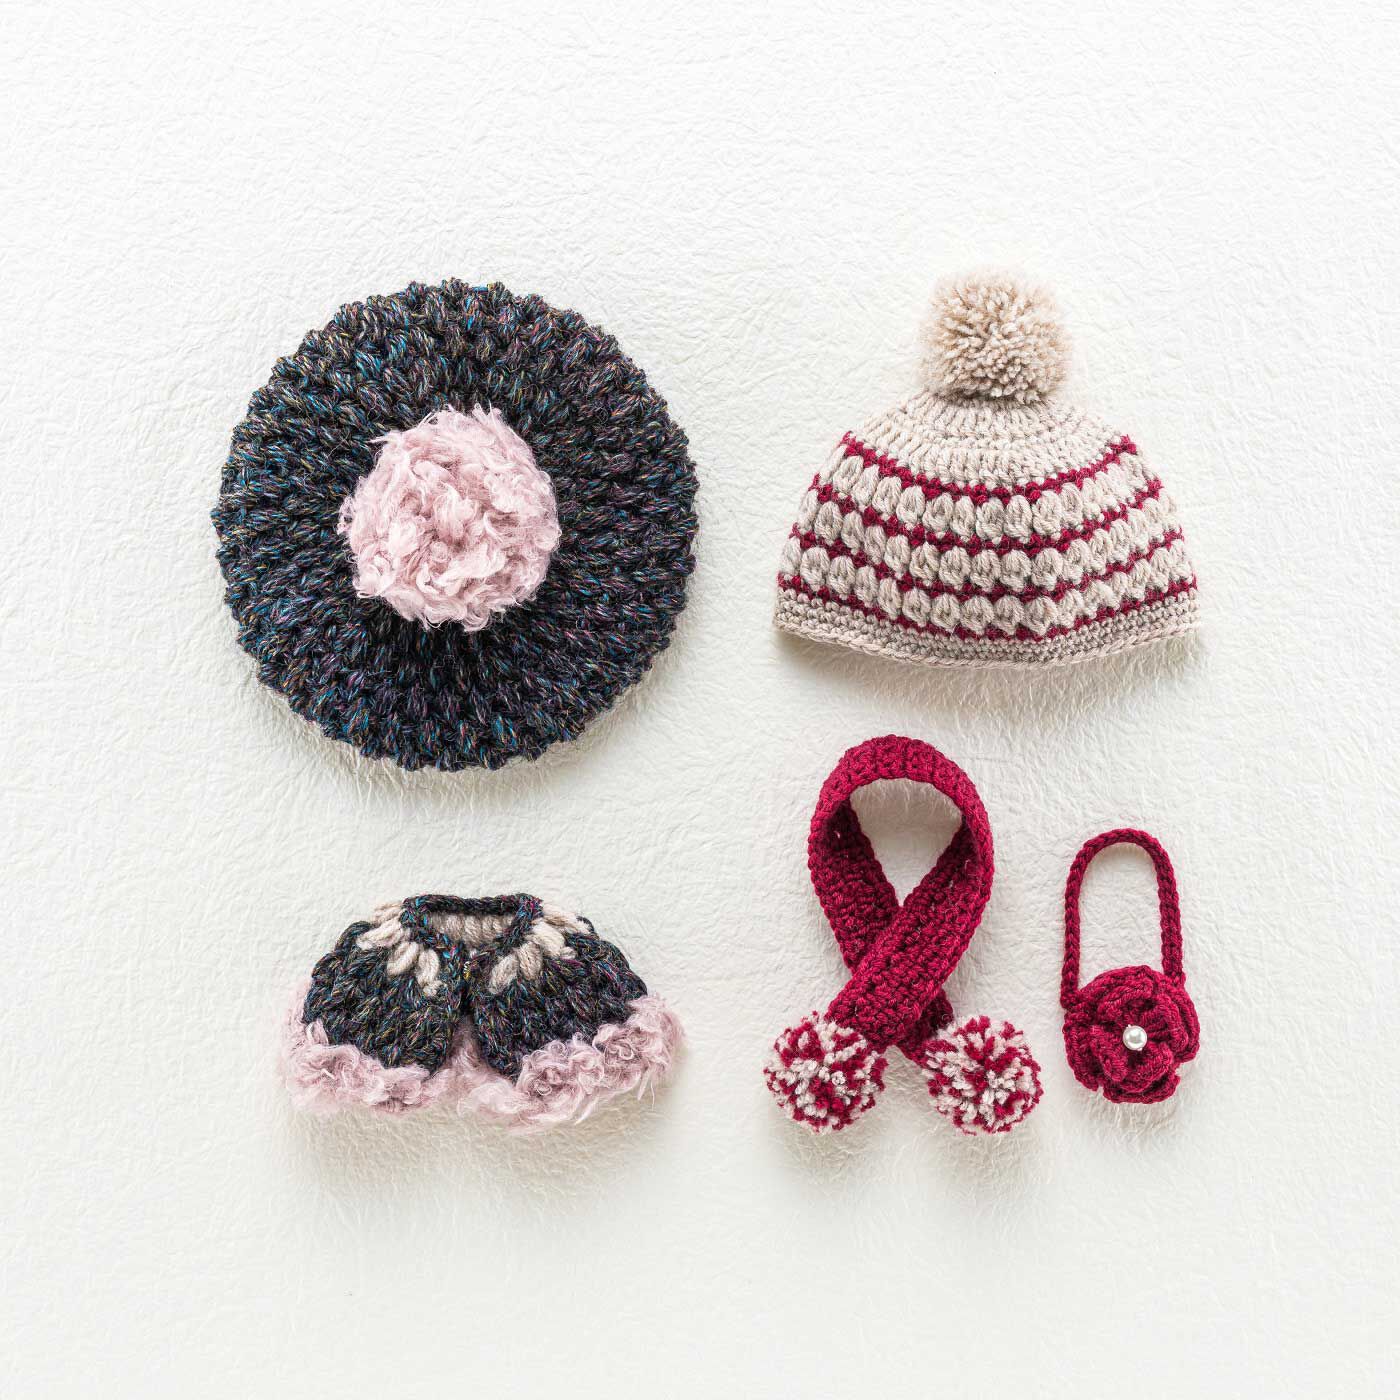 クチュリエ|寒さが待ち遠しくなる ドール用かぎ針編み帽子と小物のキット|LサイズかMサイズ、どちらかを選んで作れます（画像はLサイズ）。